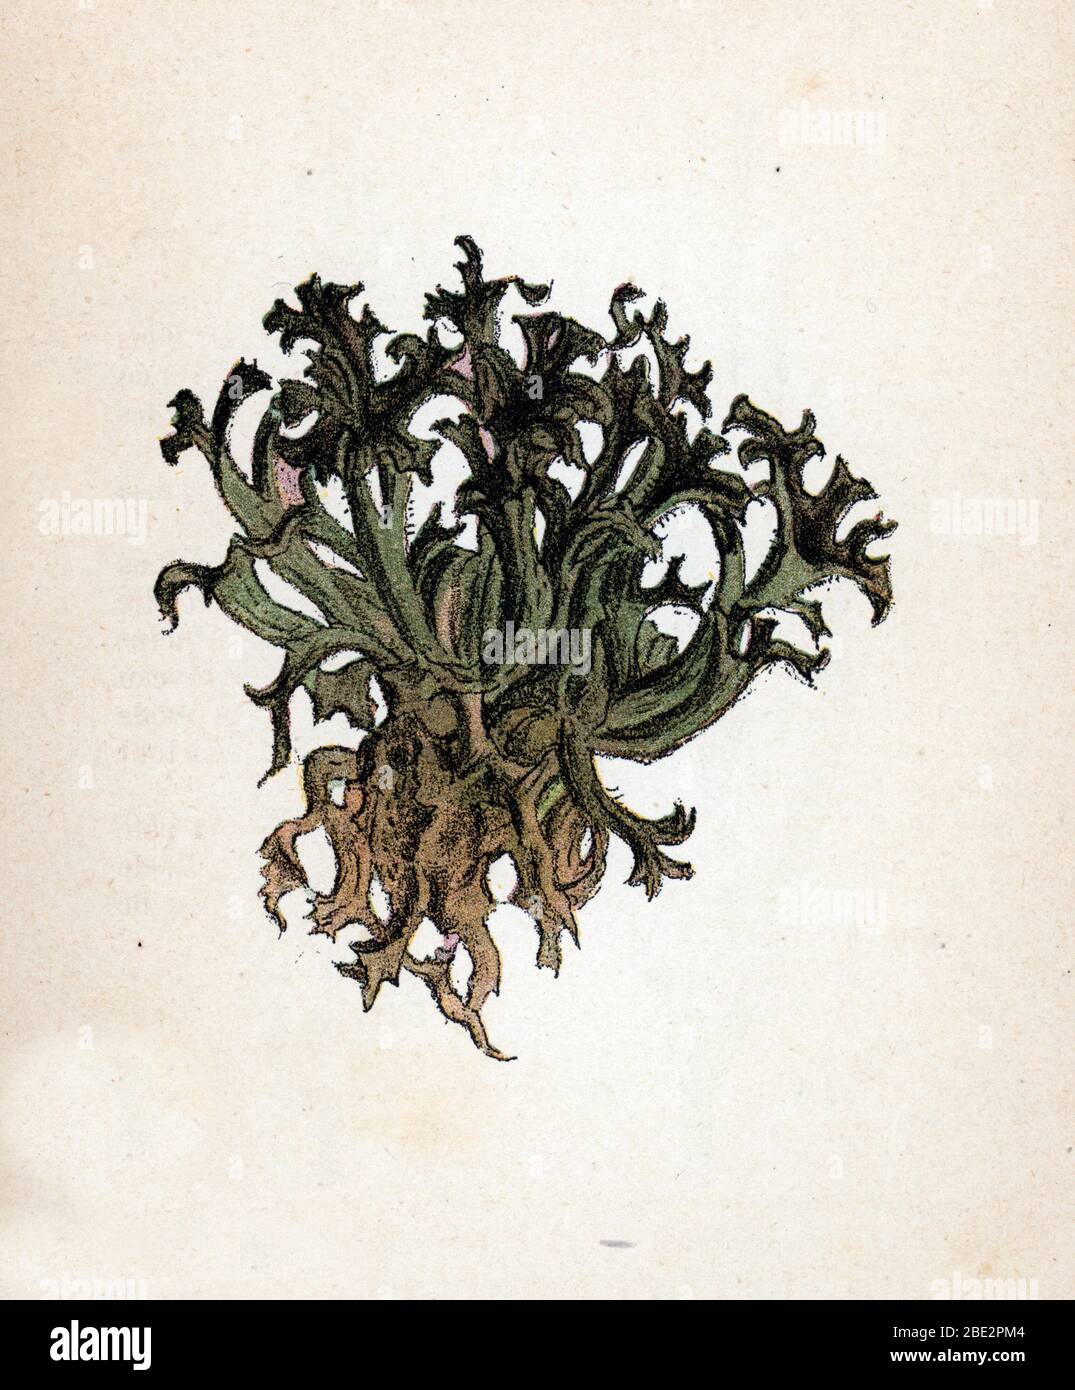 'Lichen d'Islande' (mousse islandaise ou Cetraria islandica)  (Iceland moss) Planche de botanique tiree de 'Atlas colorie des plantes medicinales' de Stock Photo